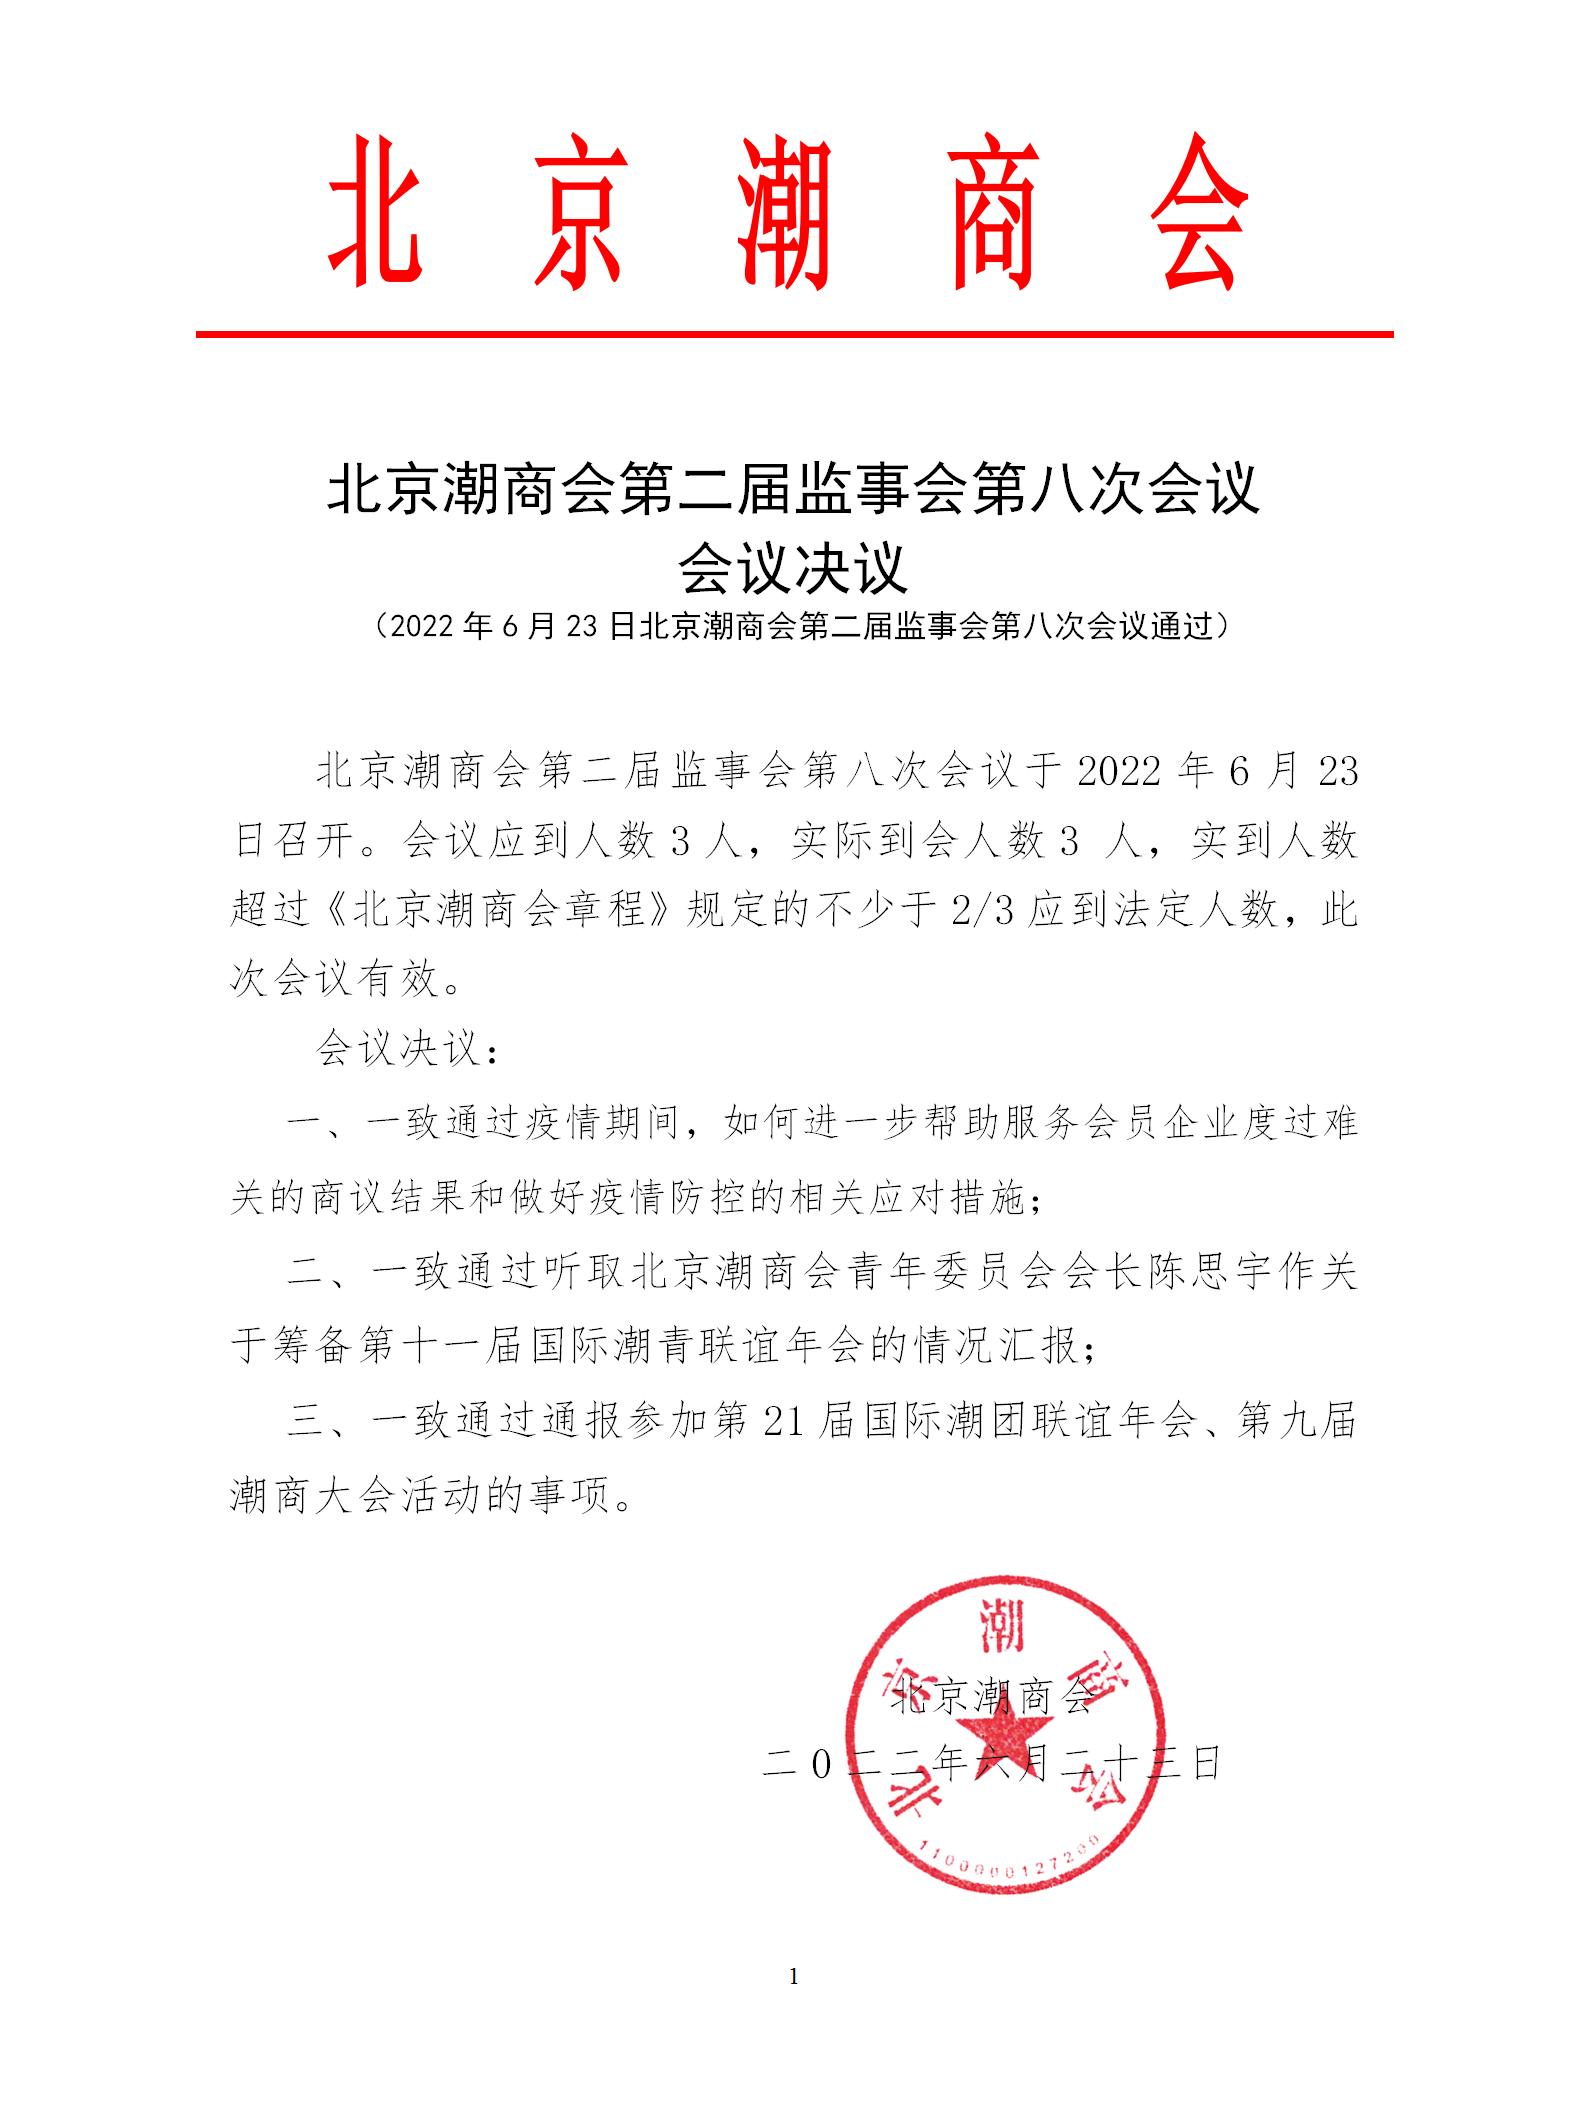 20220623北京潮商会第二届监事会第八次会议会议决议